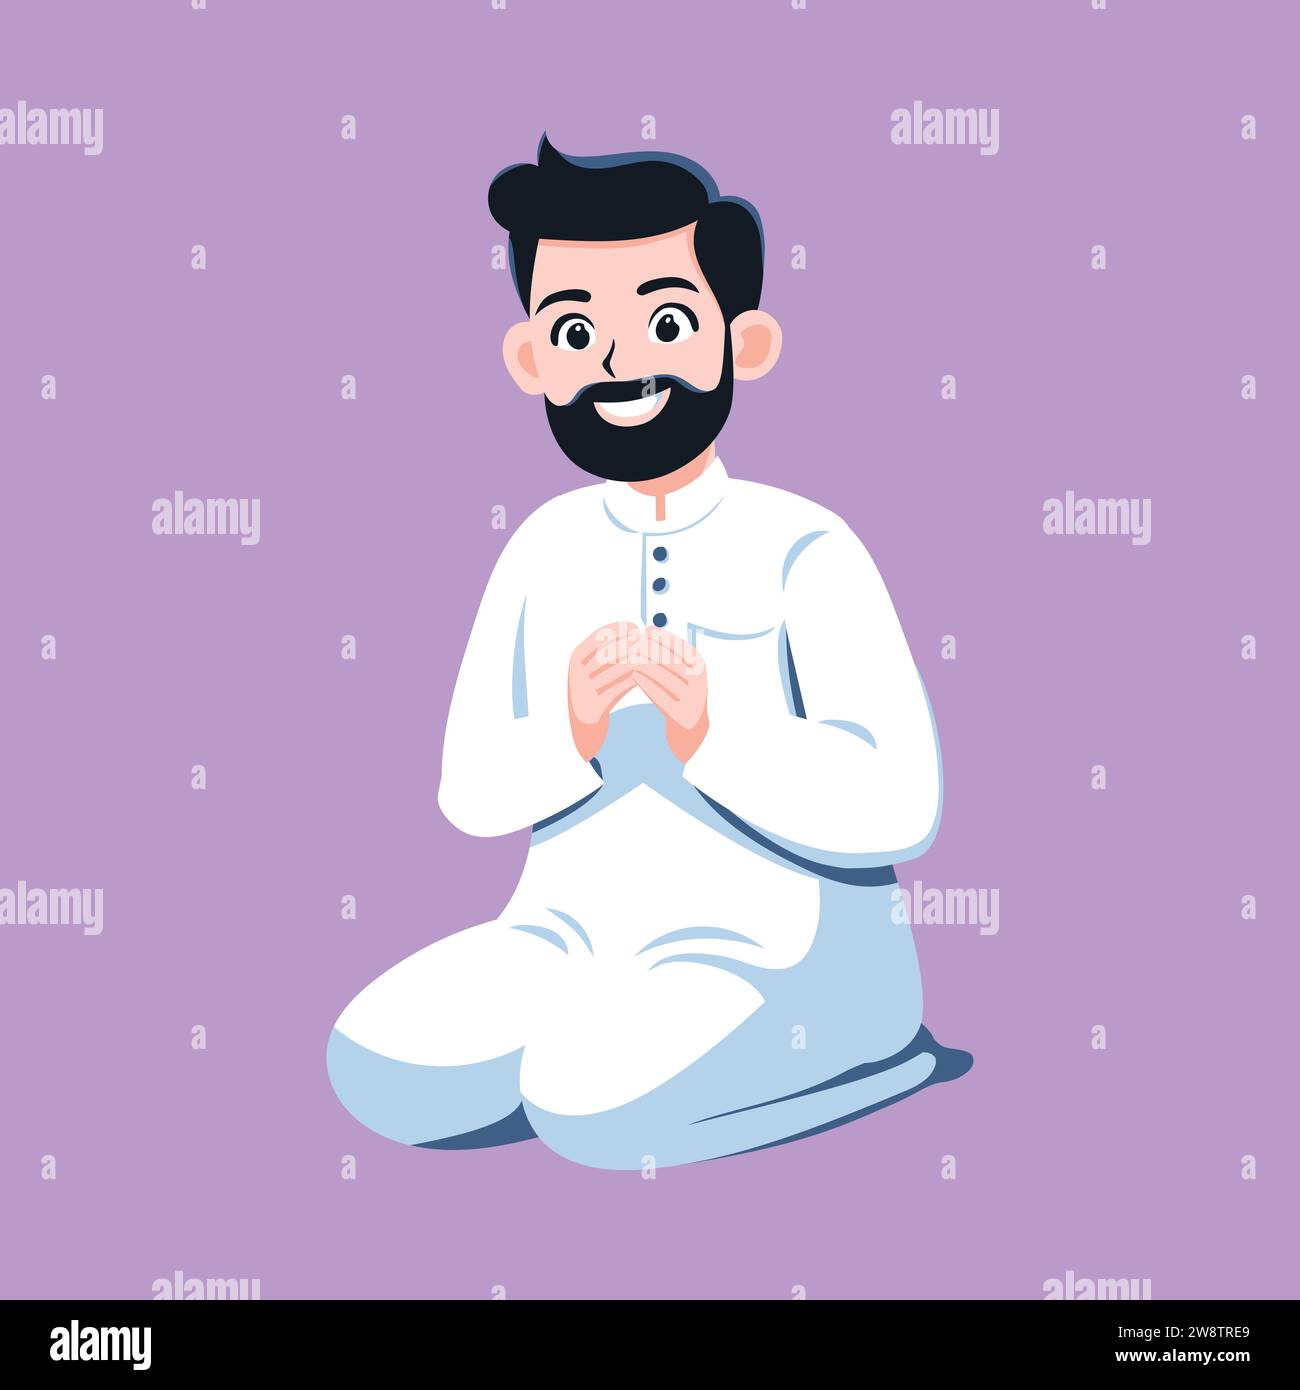 Muslimischer Mann betet. Gebete in der Gemeinde. Muslimischer Mann betet in weißer Kleidung, isolierte Zeichentrick-flache Vektor-Illustration. Stock Vektor